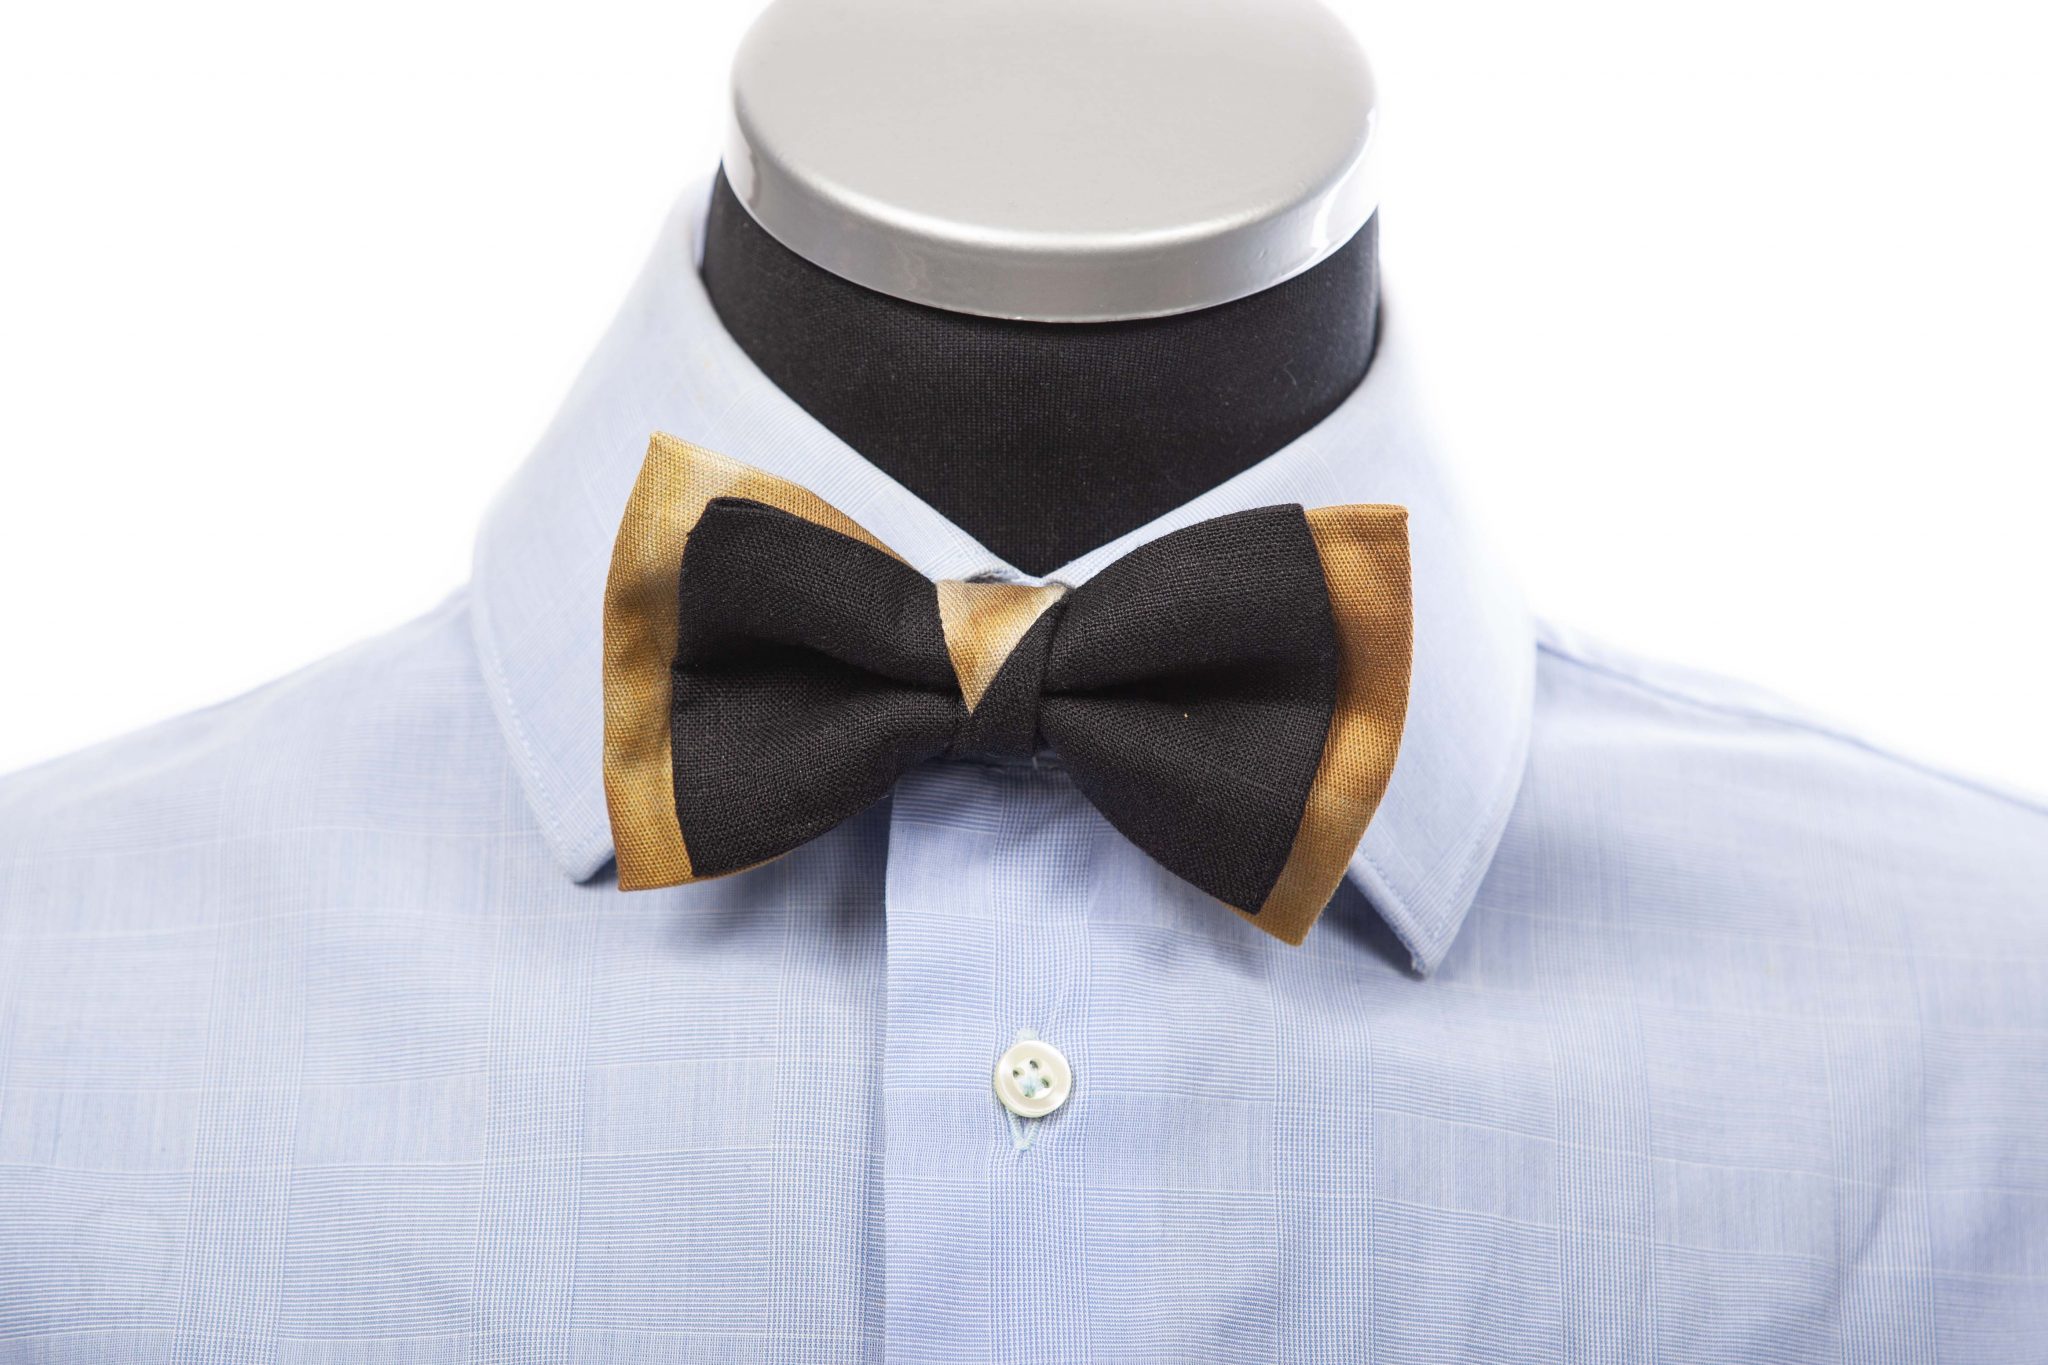 SANTA SEVERA BAY - Bow tie in black cotton and tie dye pattern - Cinzia ...